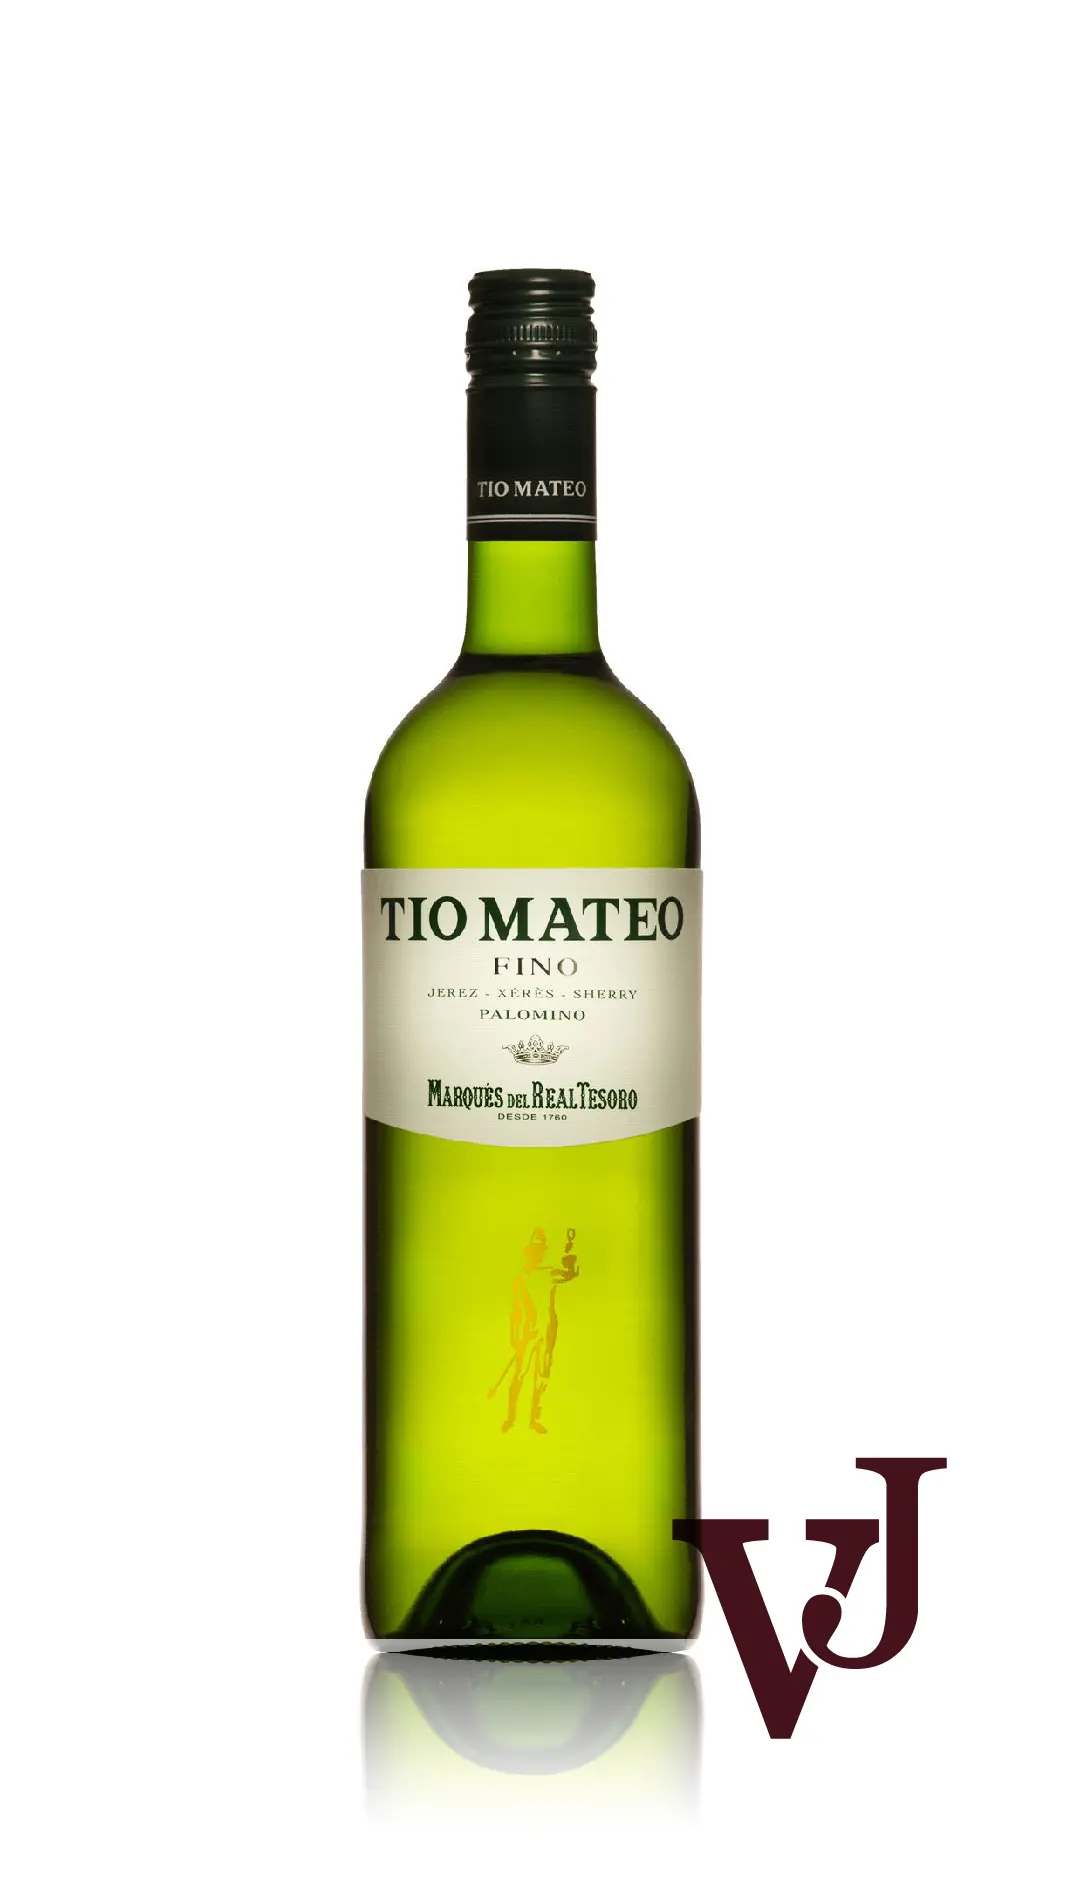 Övrigt vin - Tio Mateo Fino artikel nummer 7630601 från producenten José Estevez från området Spanien - Vinjournalen.se